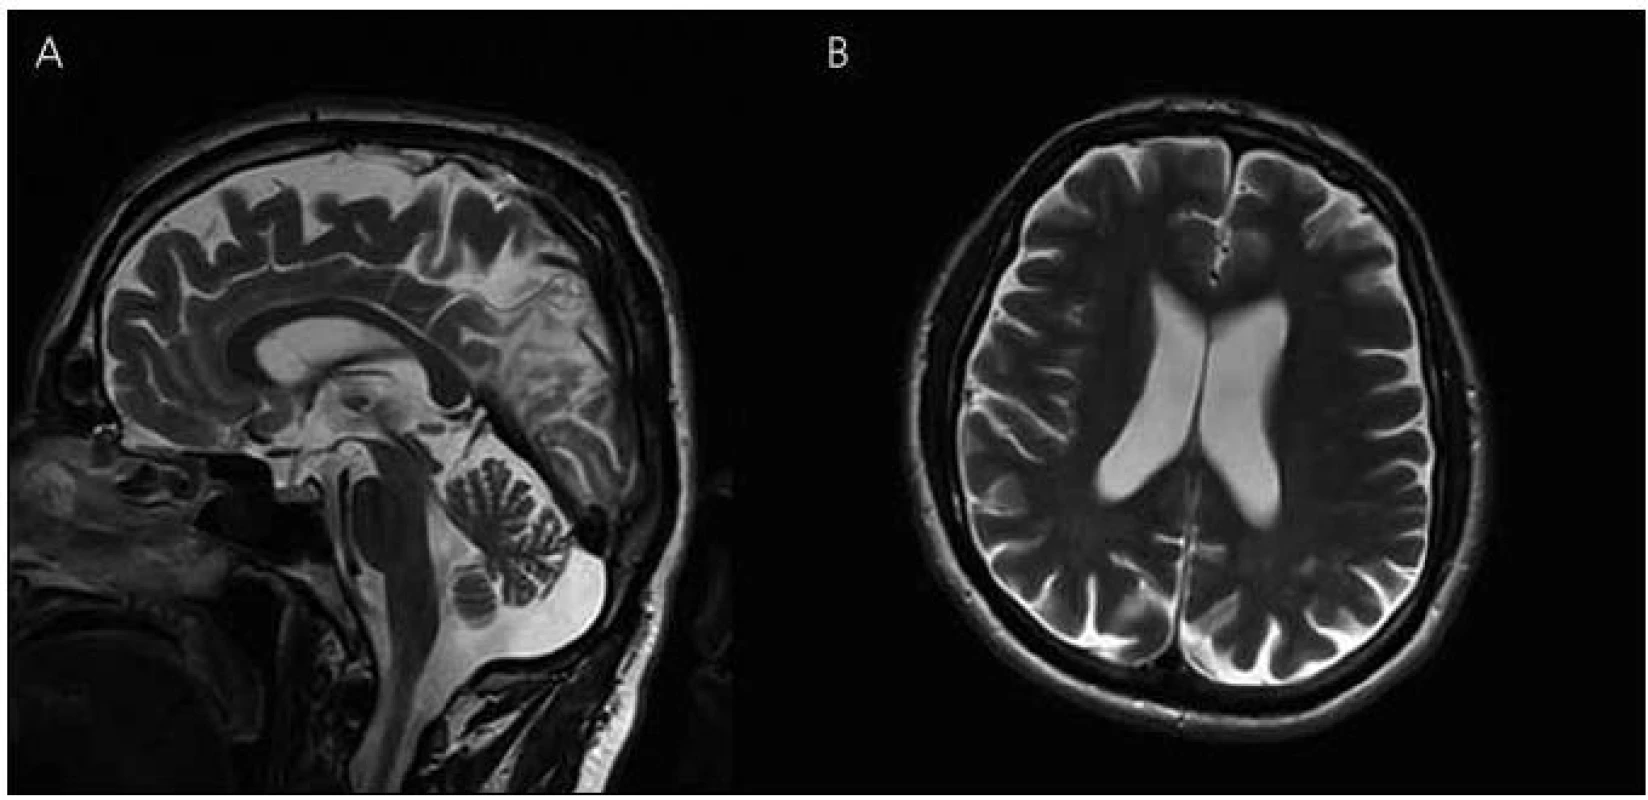 Magnetická rezonance mozku pacienta IV-4.
Atrofie mozku, megacisterna magna, průchodný mokovod a normální kmenové struktury v T2 vážených obrazech – rok 2008 (A) sagitální řezy (B) transverzální řezy.